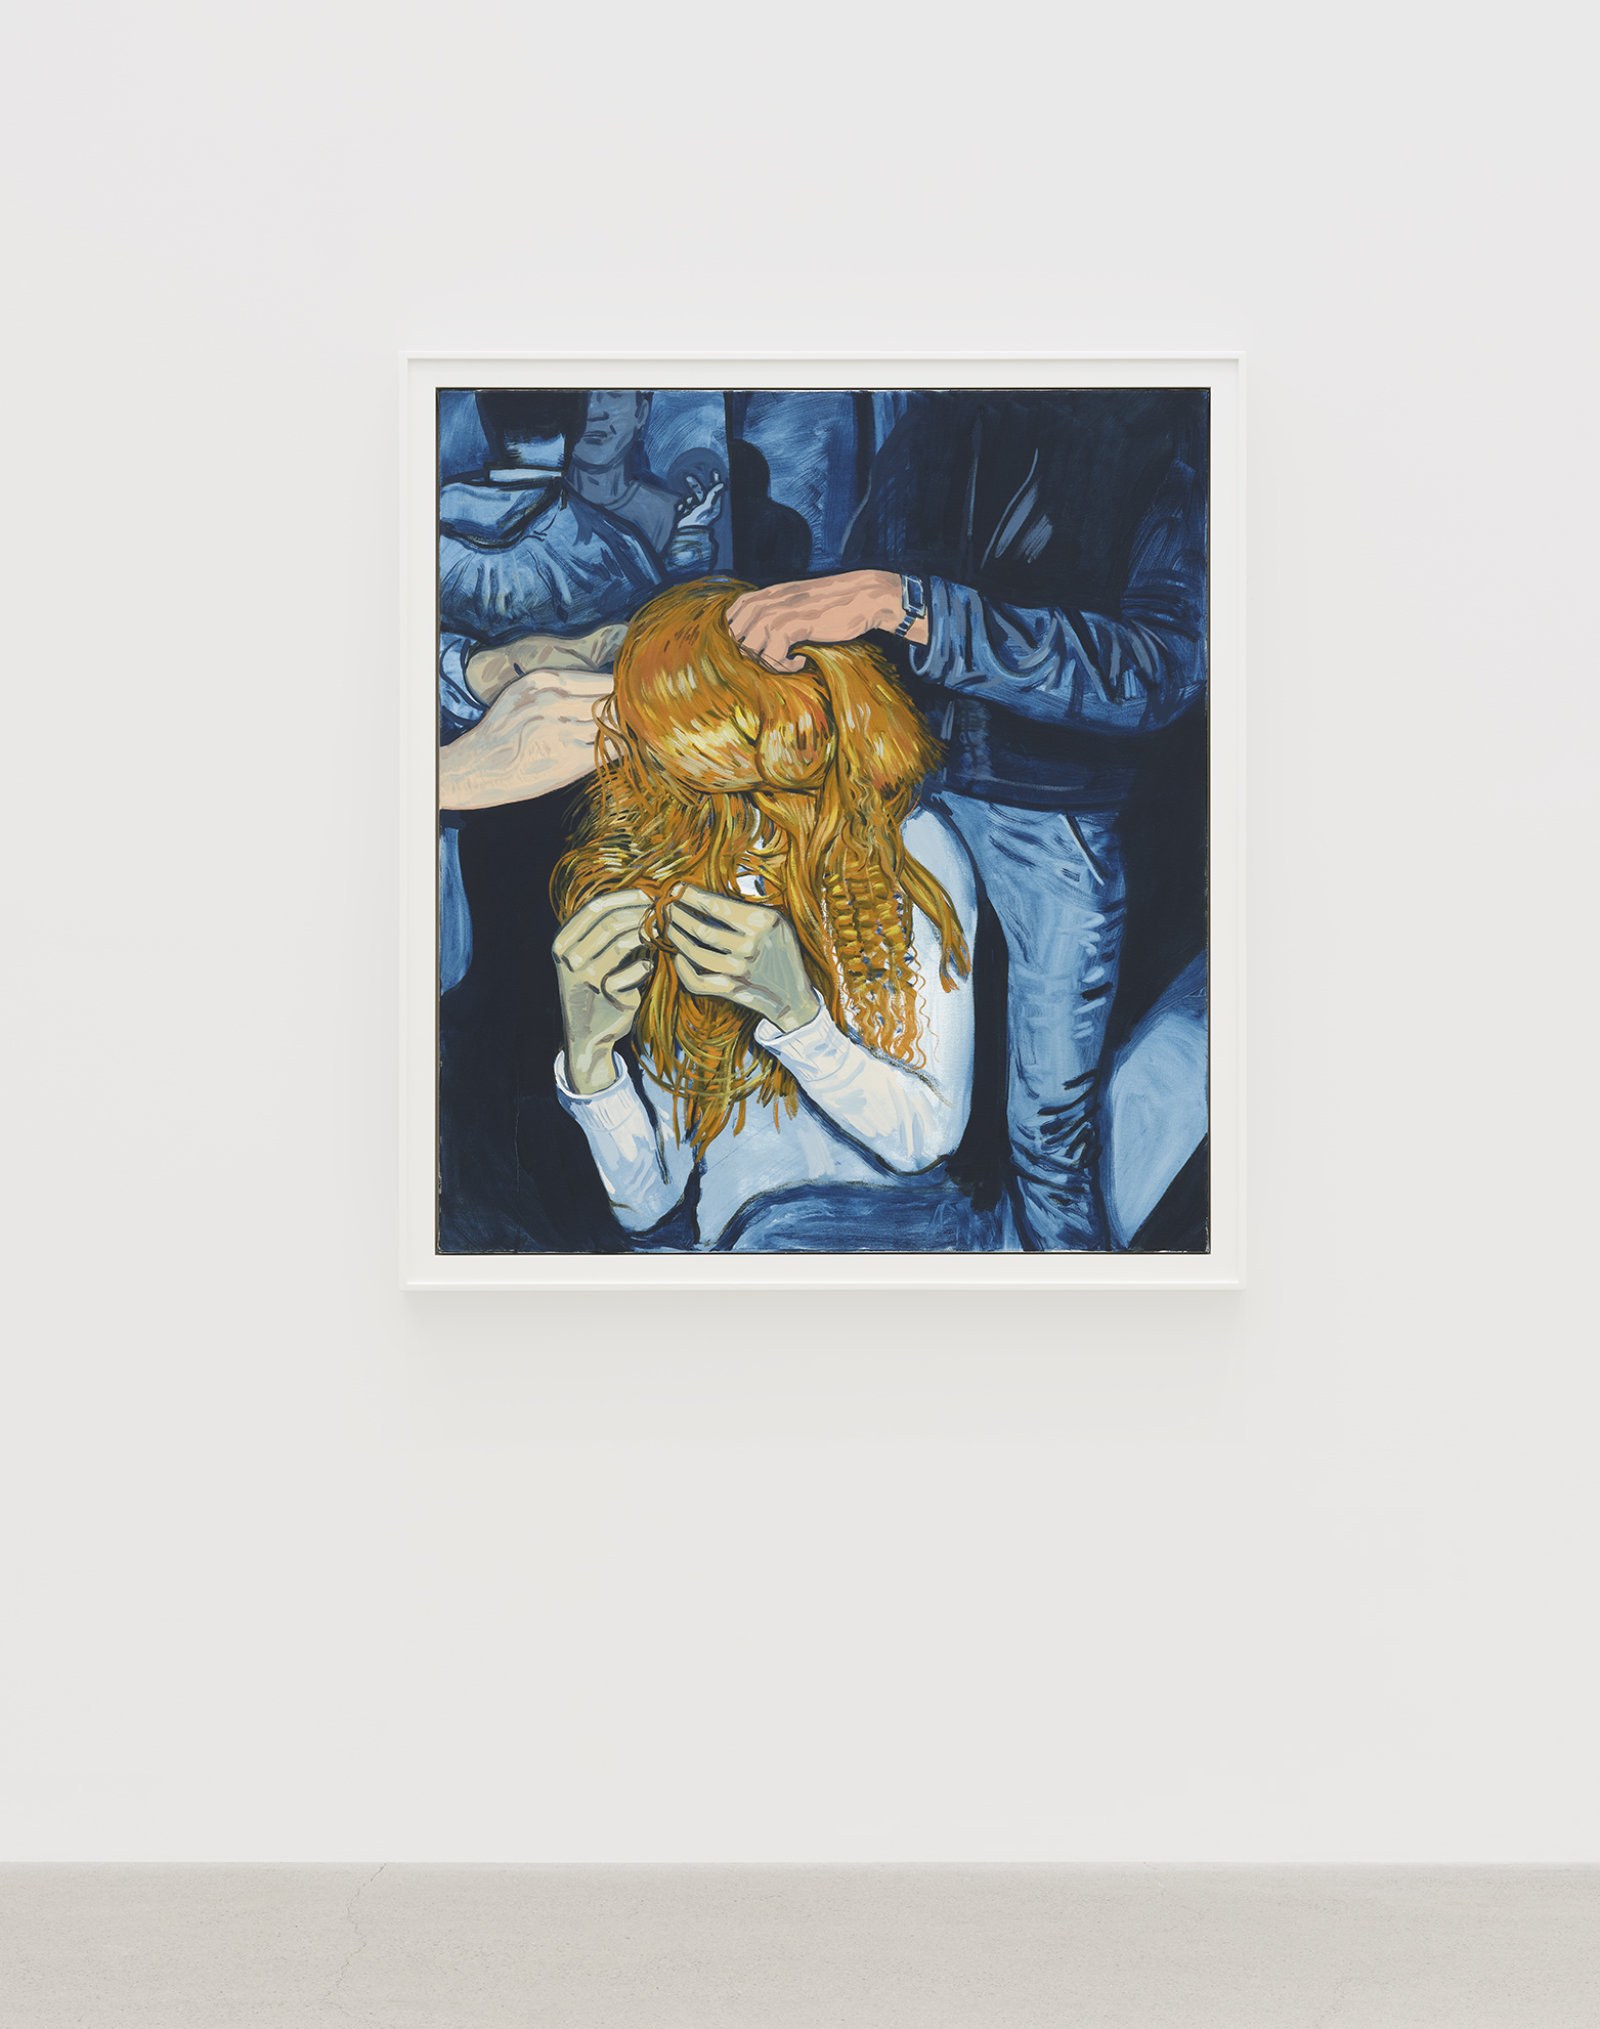 Damian Moppett, Hairdo, 2020, oil on canvas, 51 x 45 in. (128 x 115 cm)